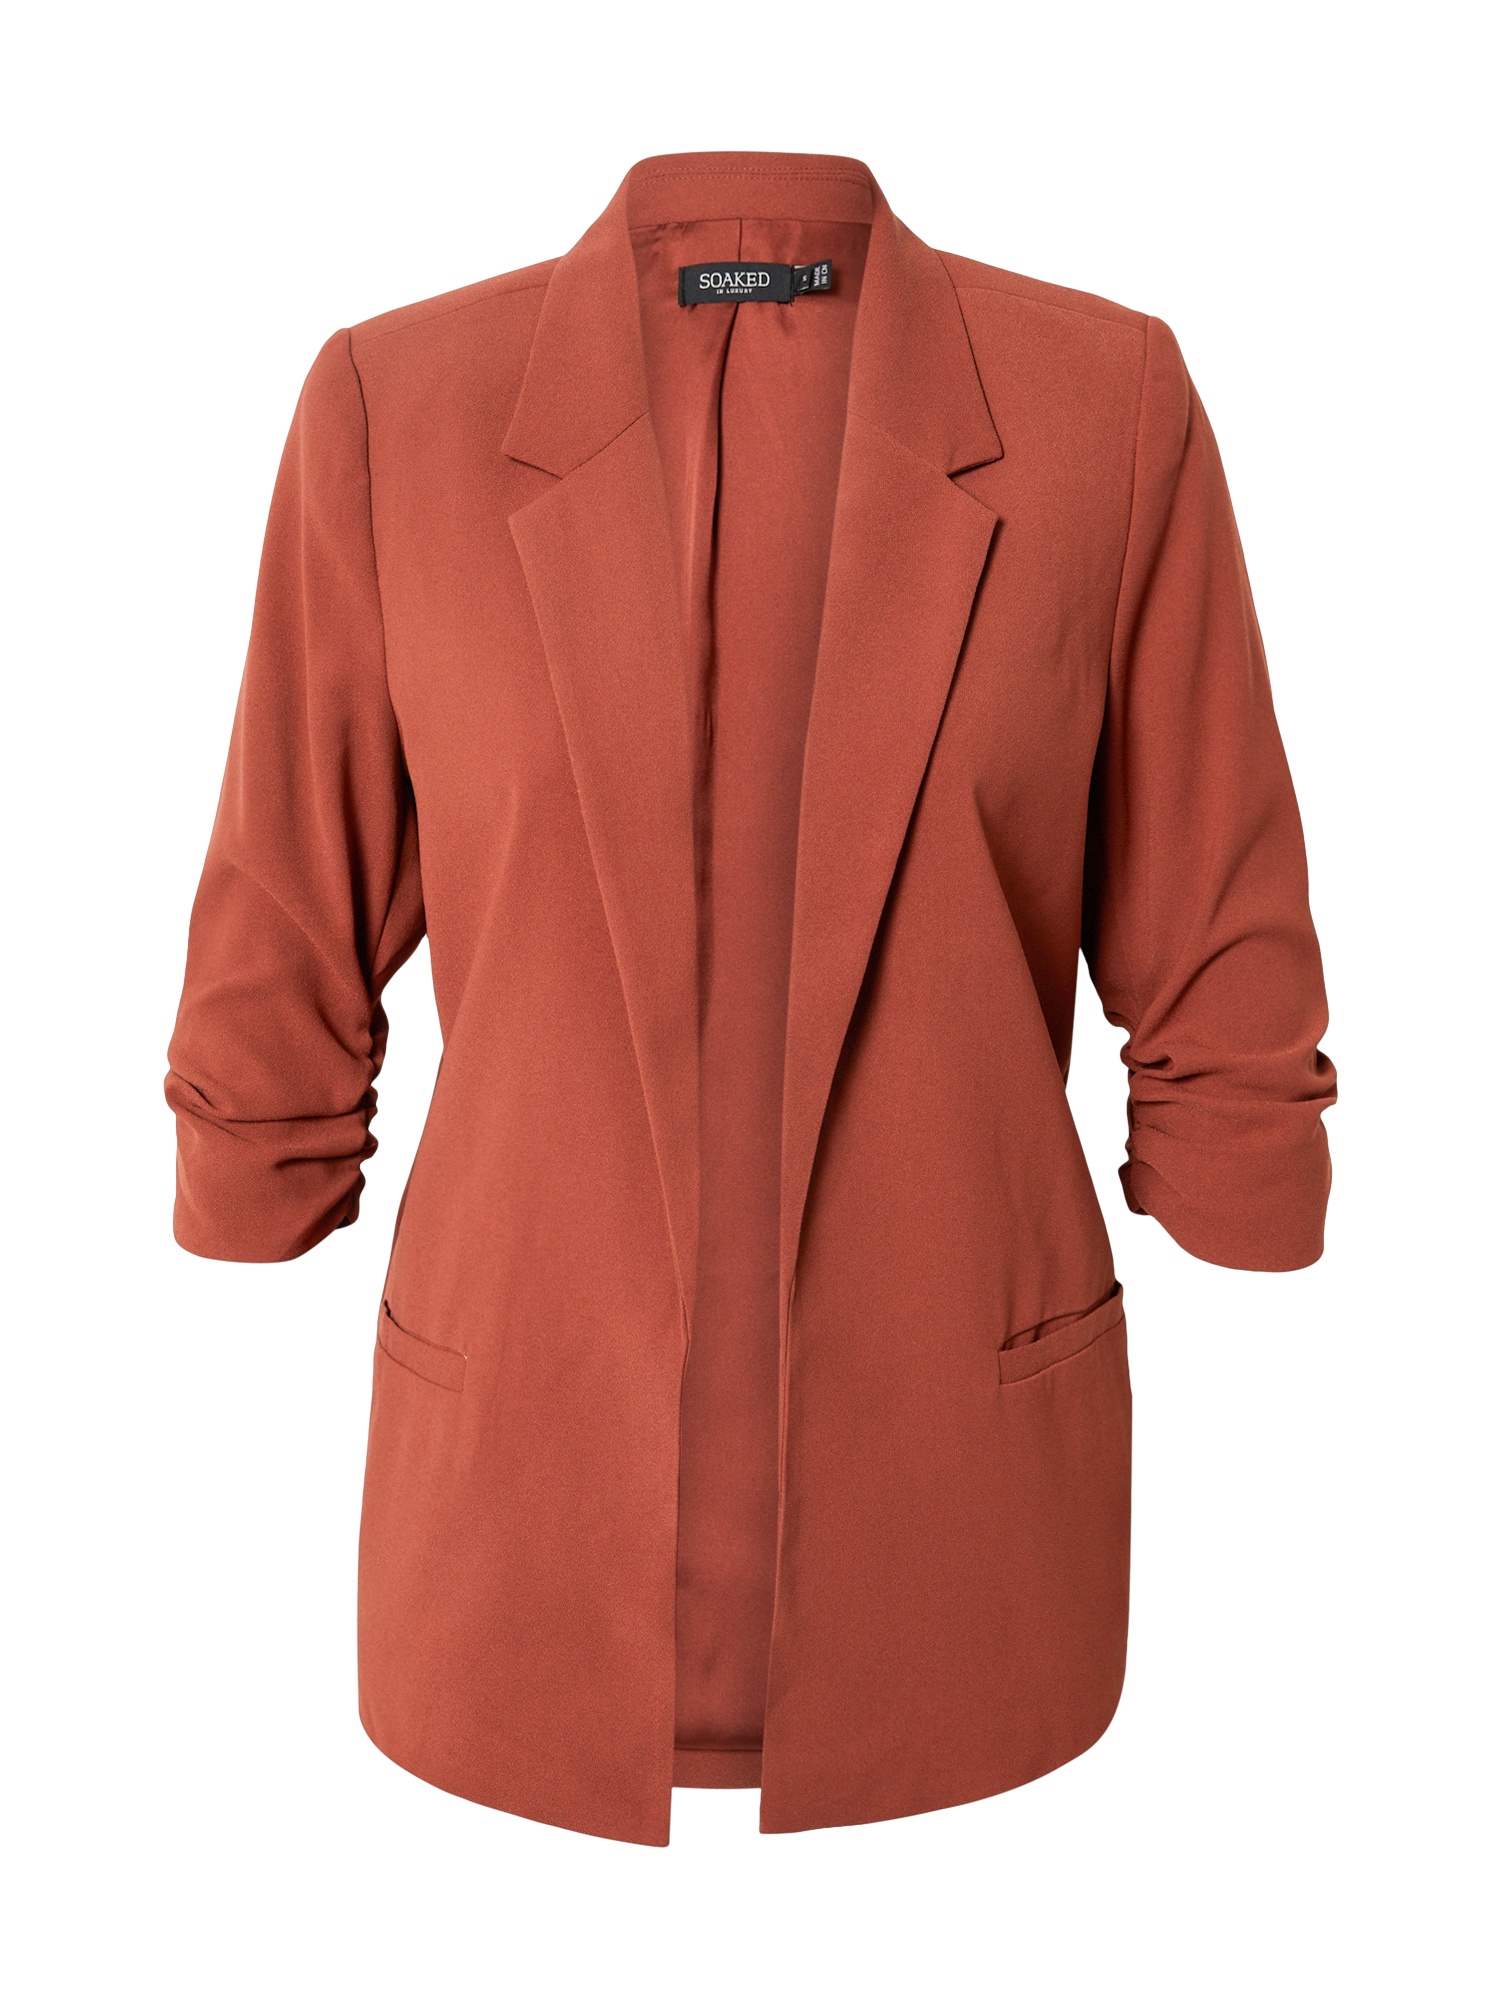 Odzież Kobiety SOAKED IN LUXURY Marynkarka Shirley w kolorze Rdzawobrązowym 